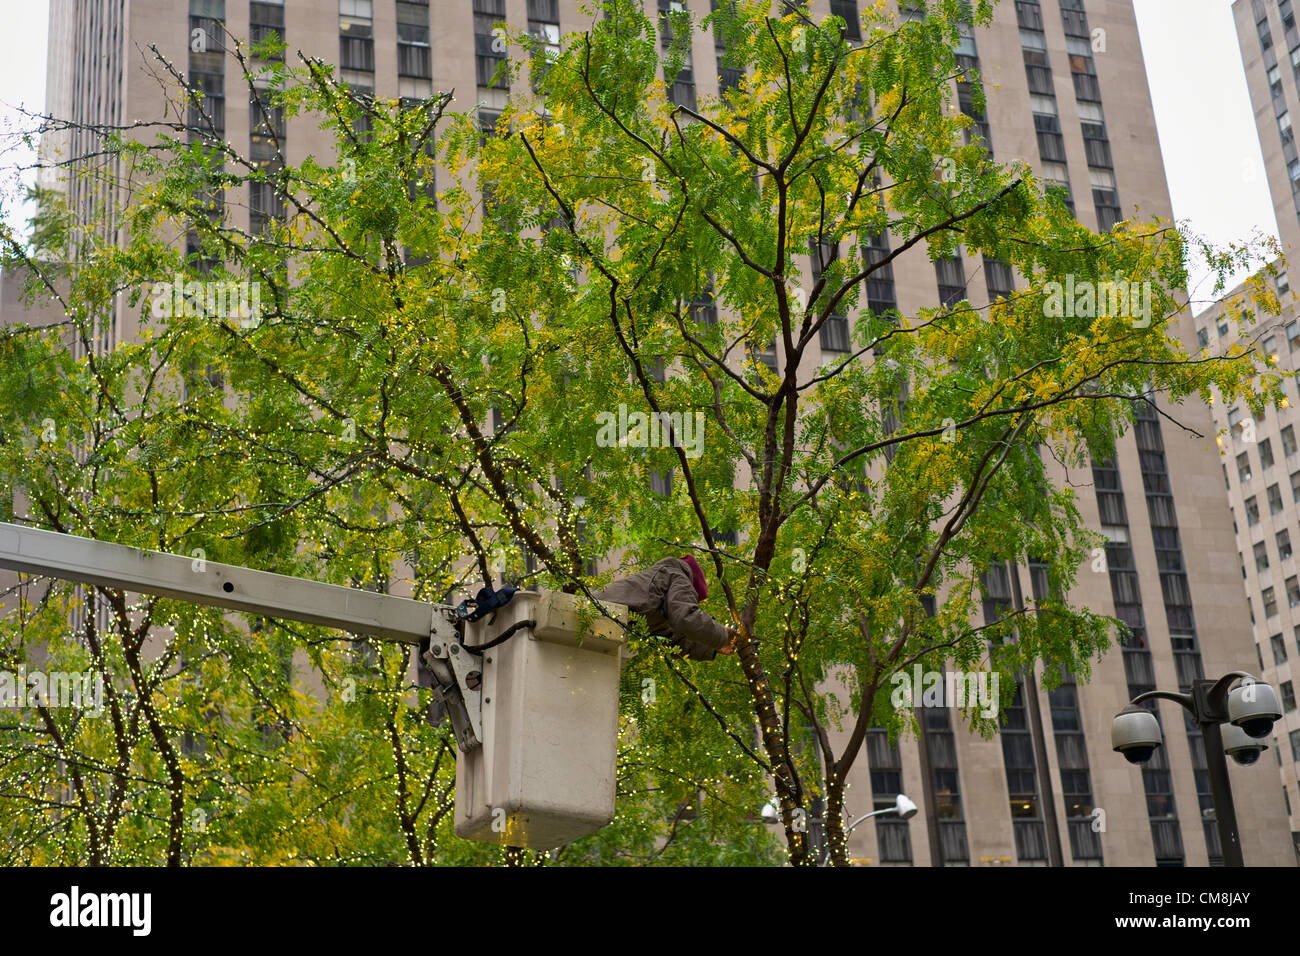 Ottobre 28, 2012, New York, NY; Workman rimuove luci delle vacanze da albero su West 50th Street davanti a uragano di sabbia. Le luci sono stati messi in soli quattro giorni prima. Foto Stock